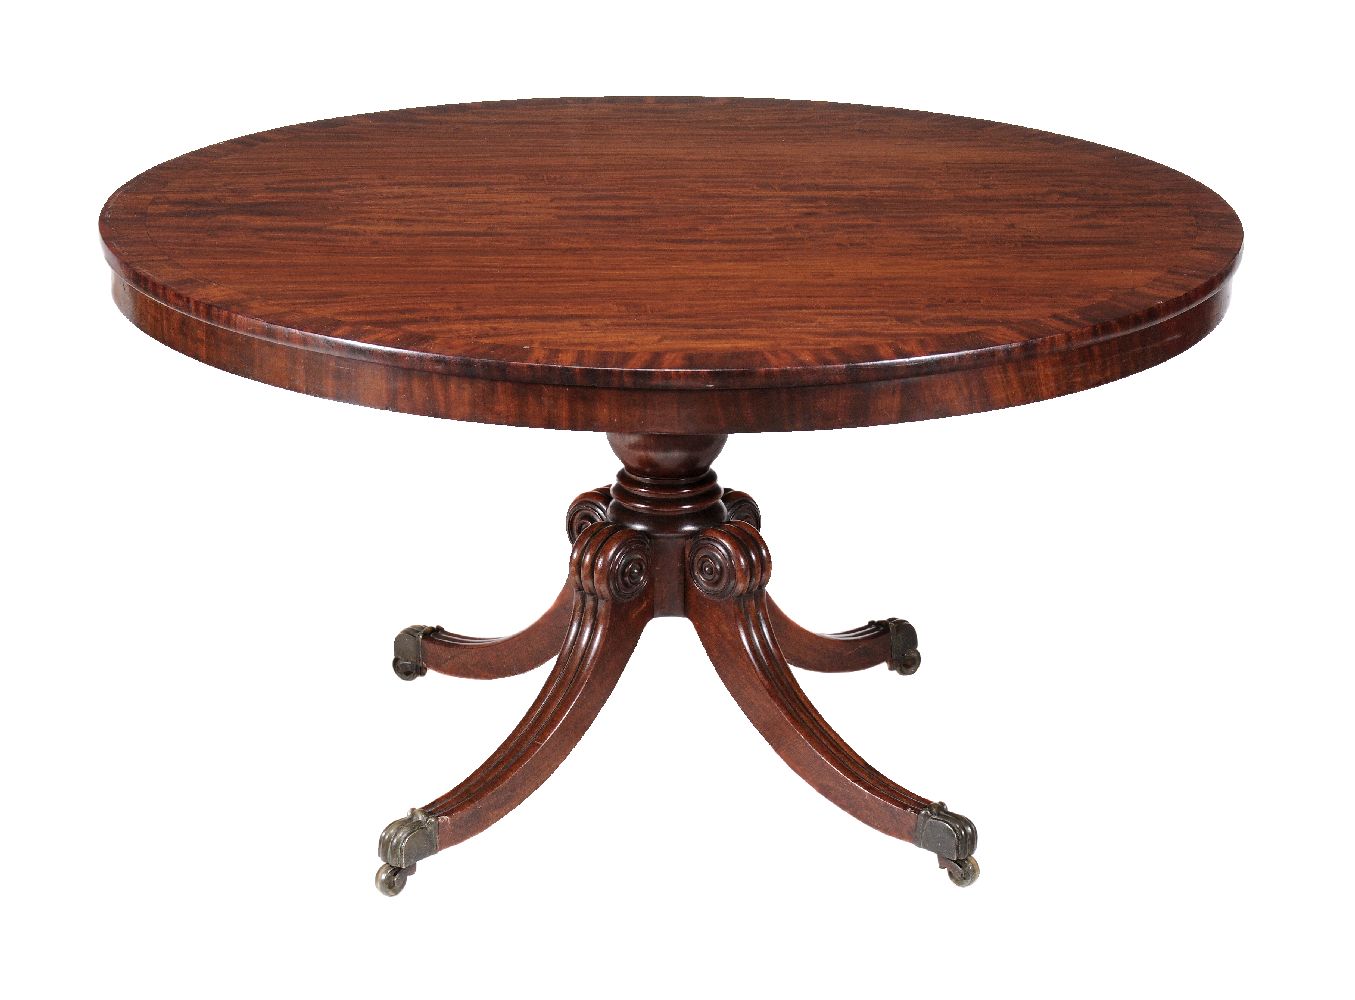 A late Regency mahogany circular centre table